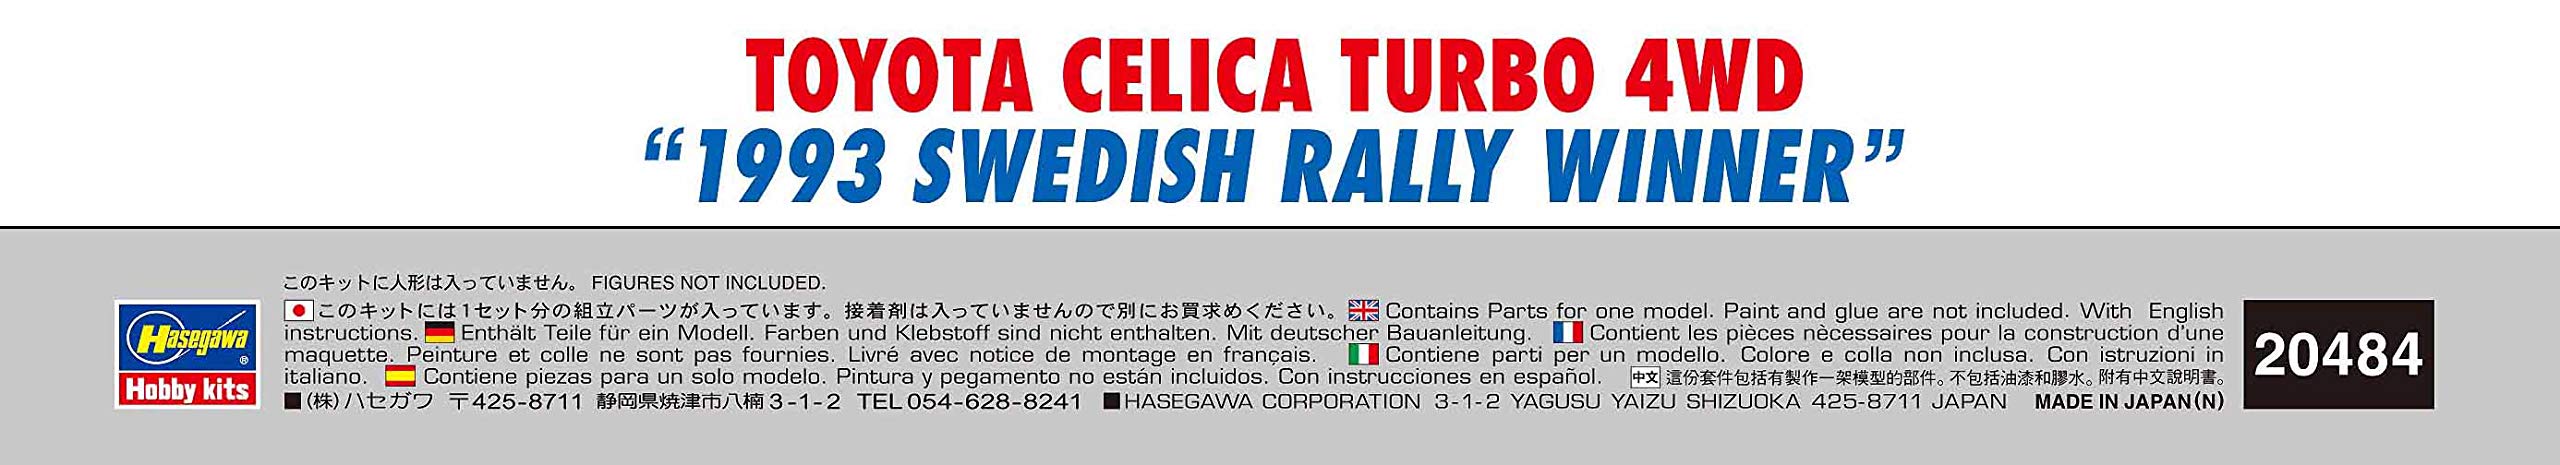 Hasegawa 1/24 Toyota Celica Turbo 4Wd 1993 Voiture de course à l'échelle gagnante du rallye suédois